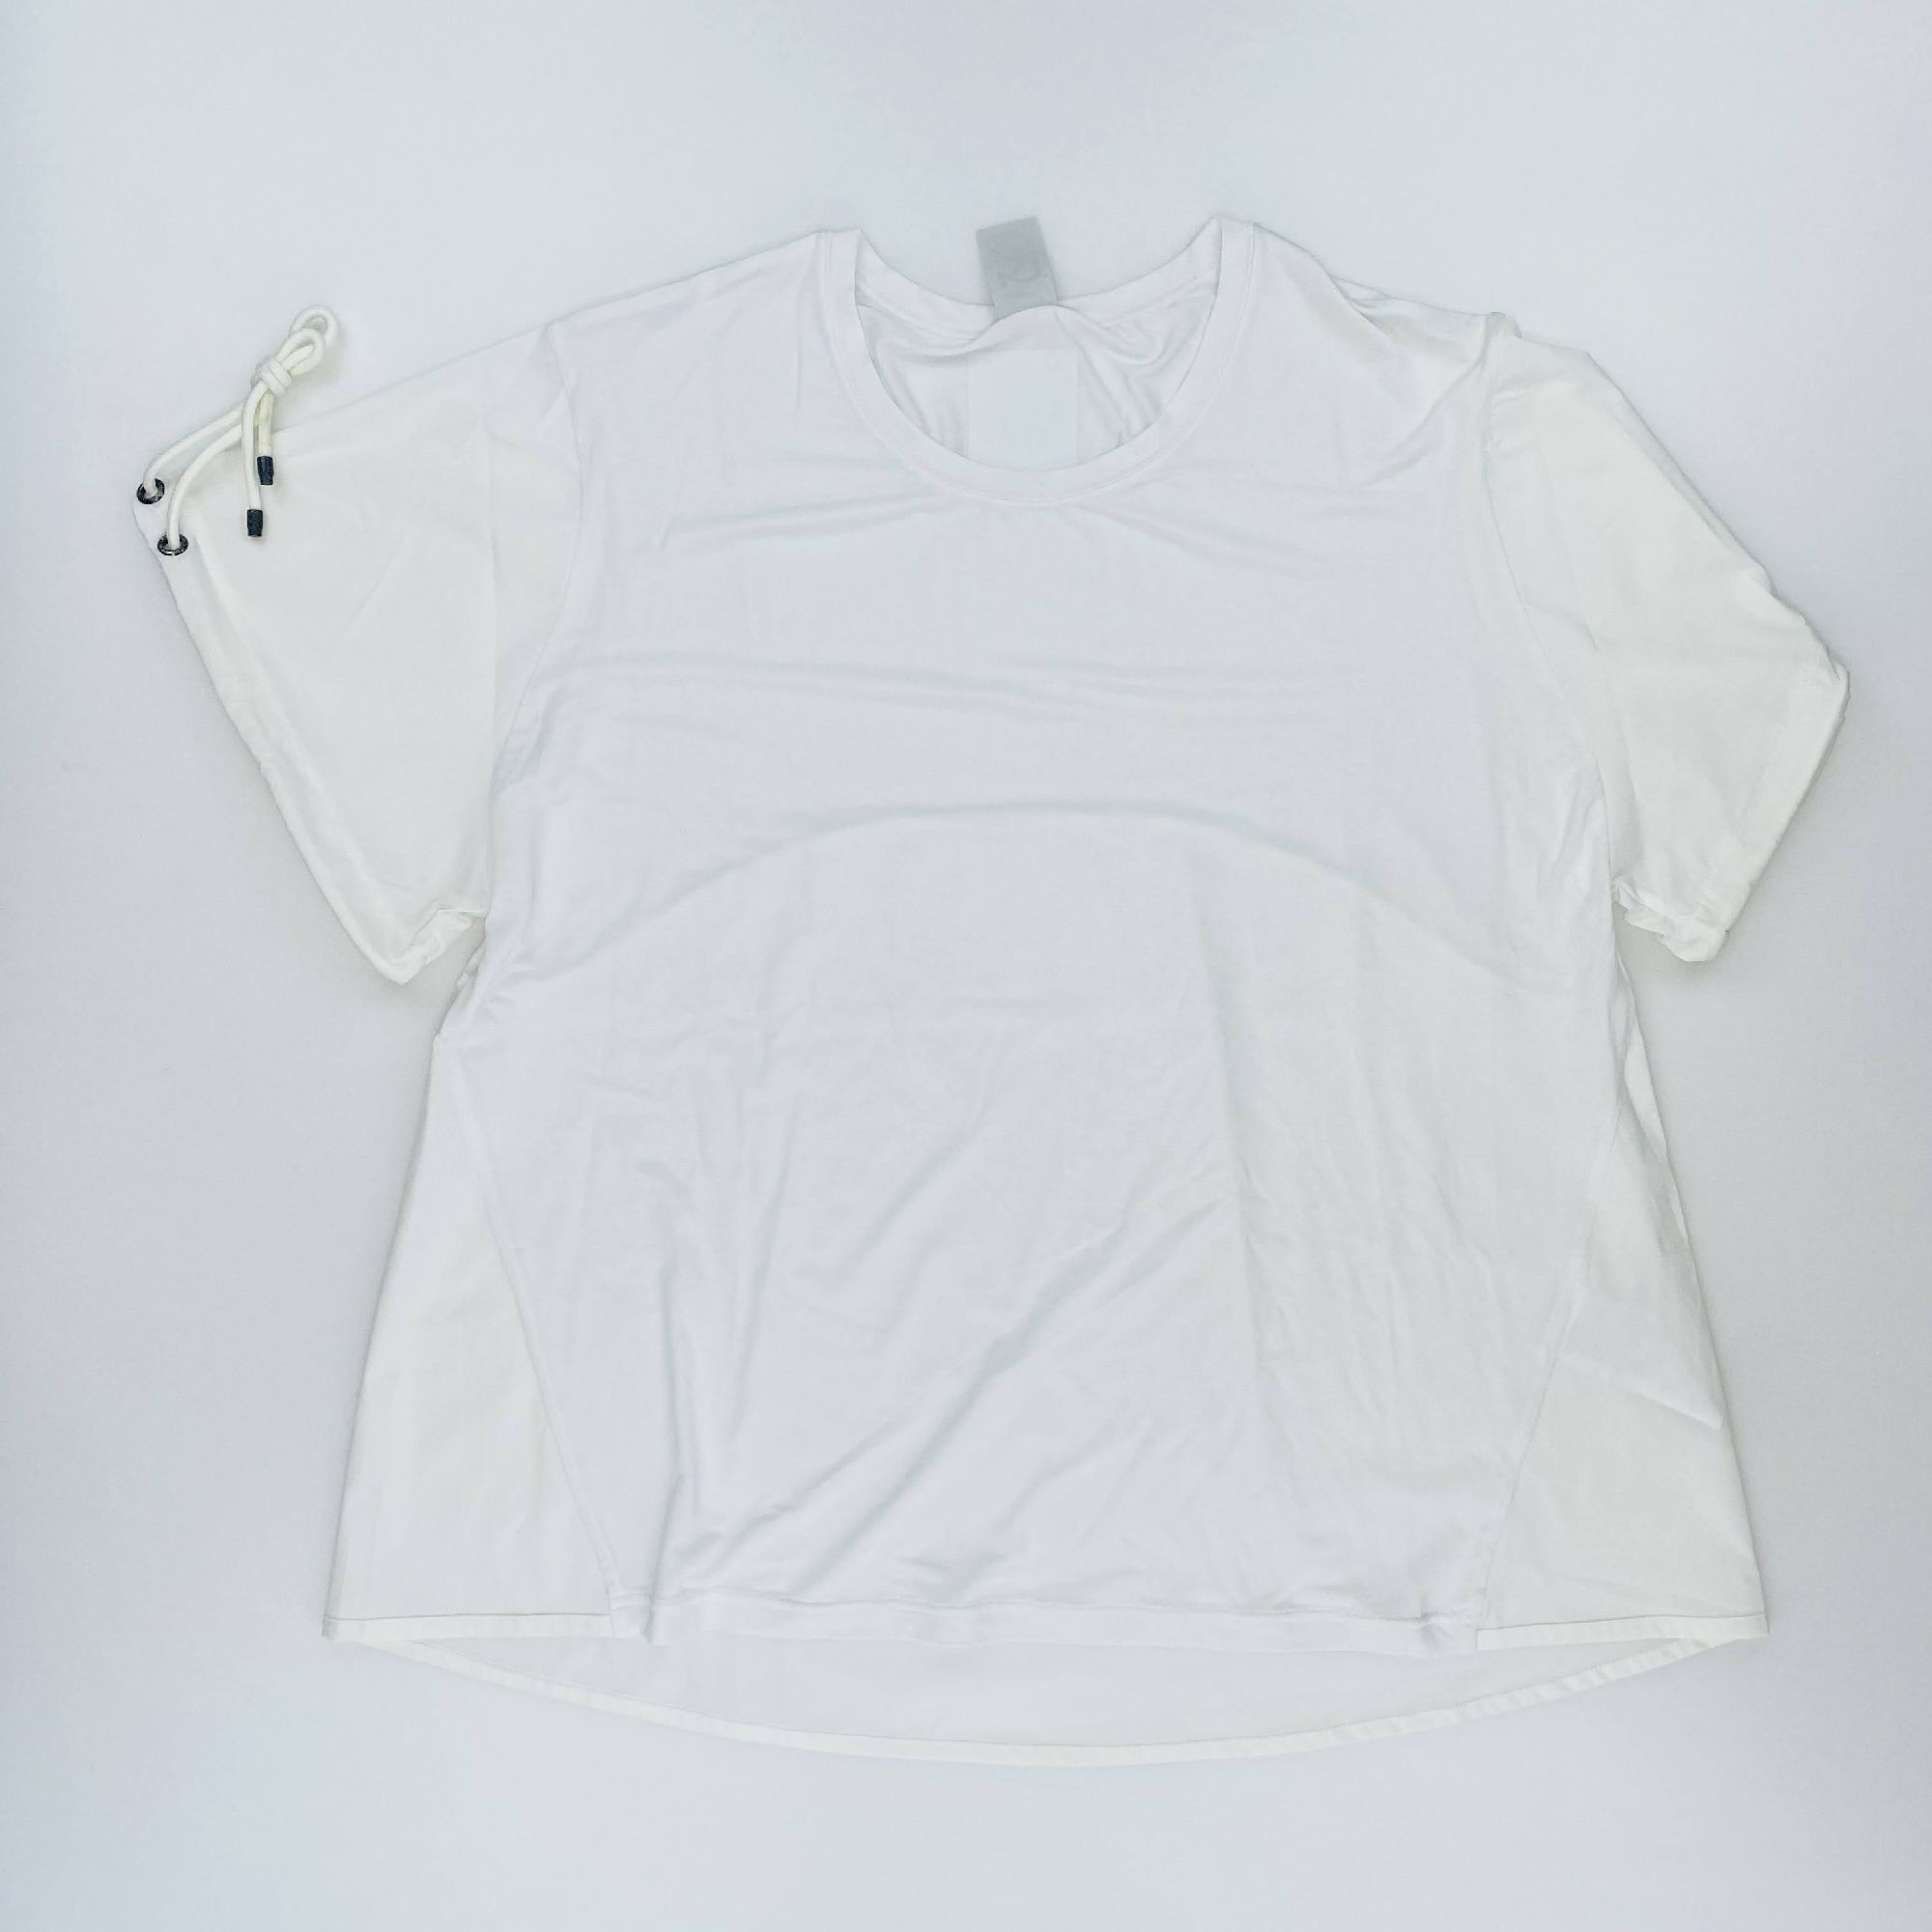 Kari Traa Voss Tee - Second Hand T-shirt - Women's - White - M | Hardloop